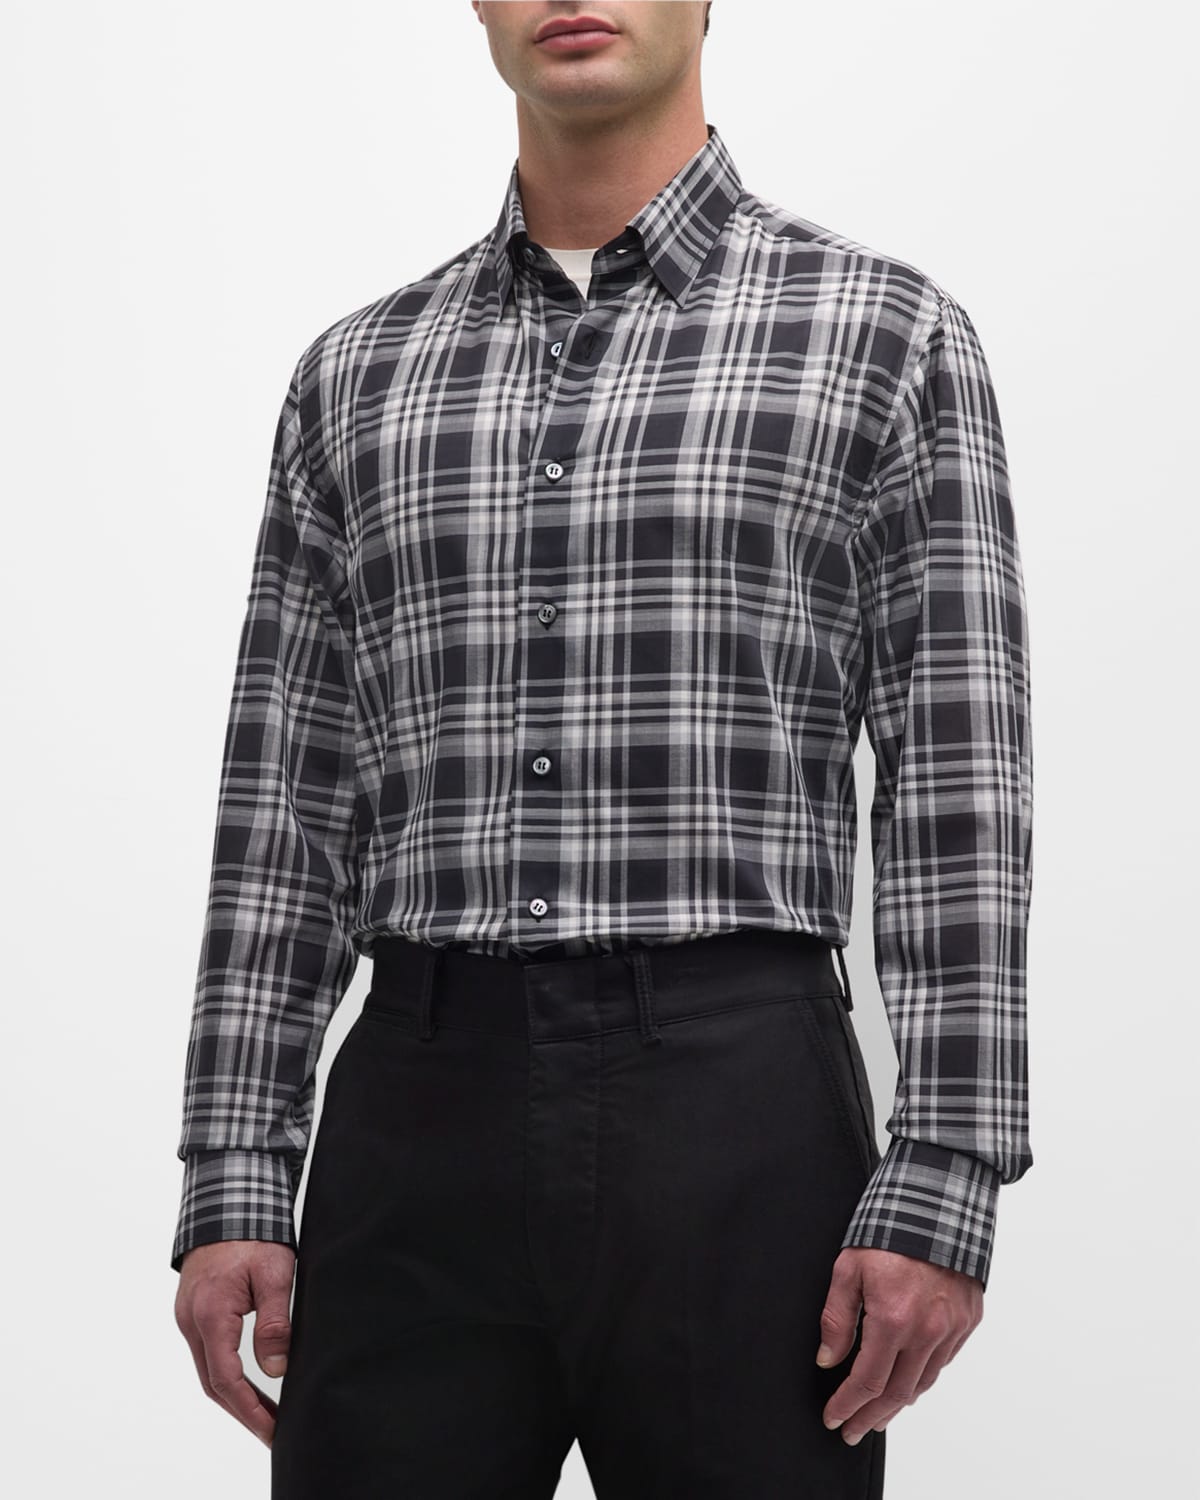 Brioni Men's Cotton Plaid Sport Shirt In Flannel